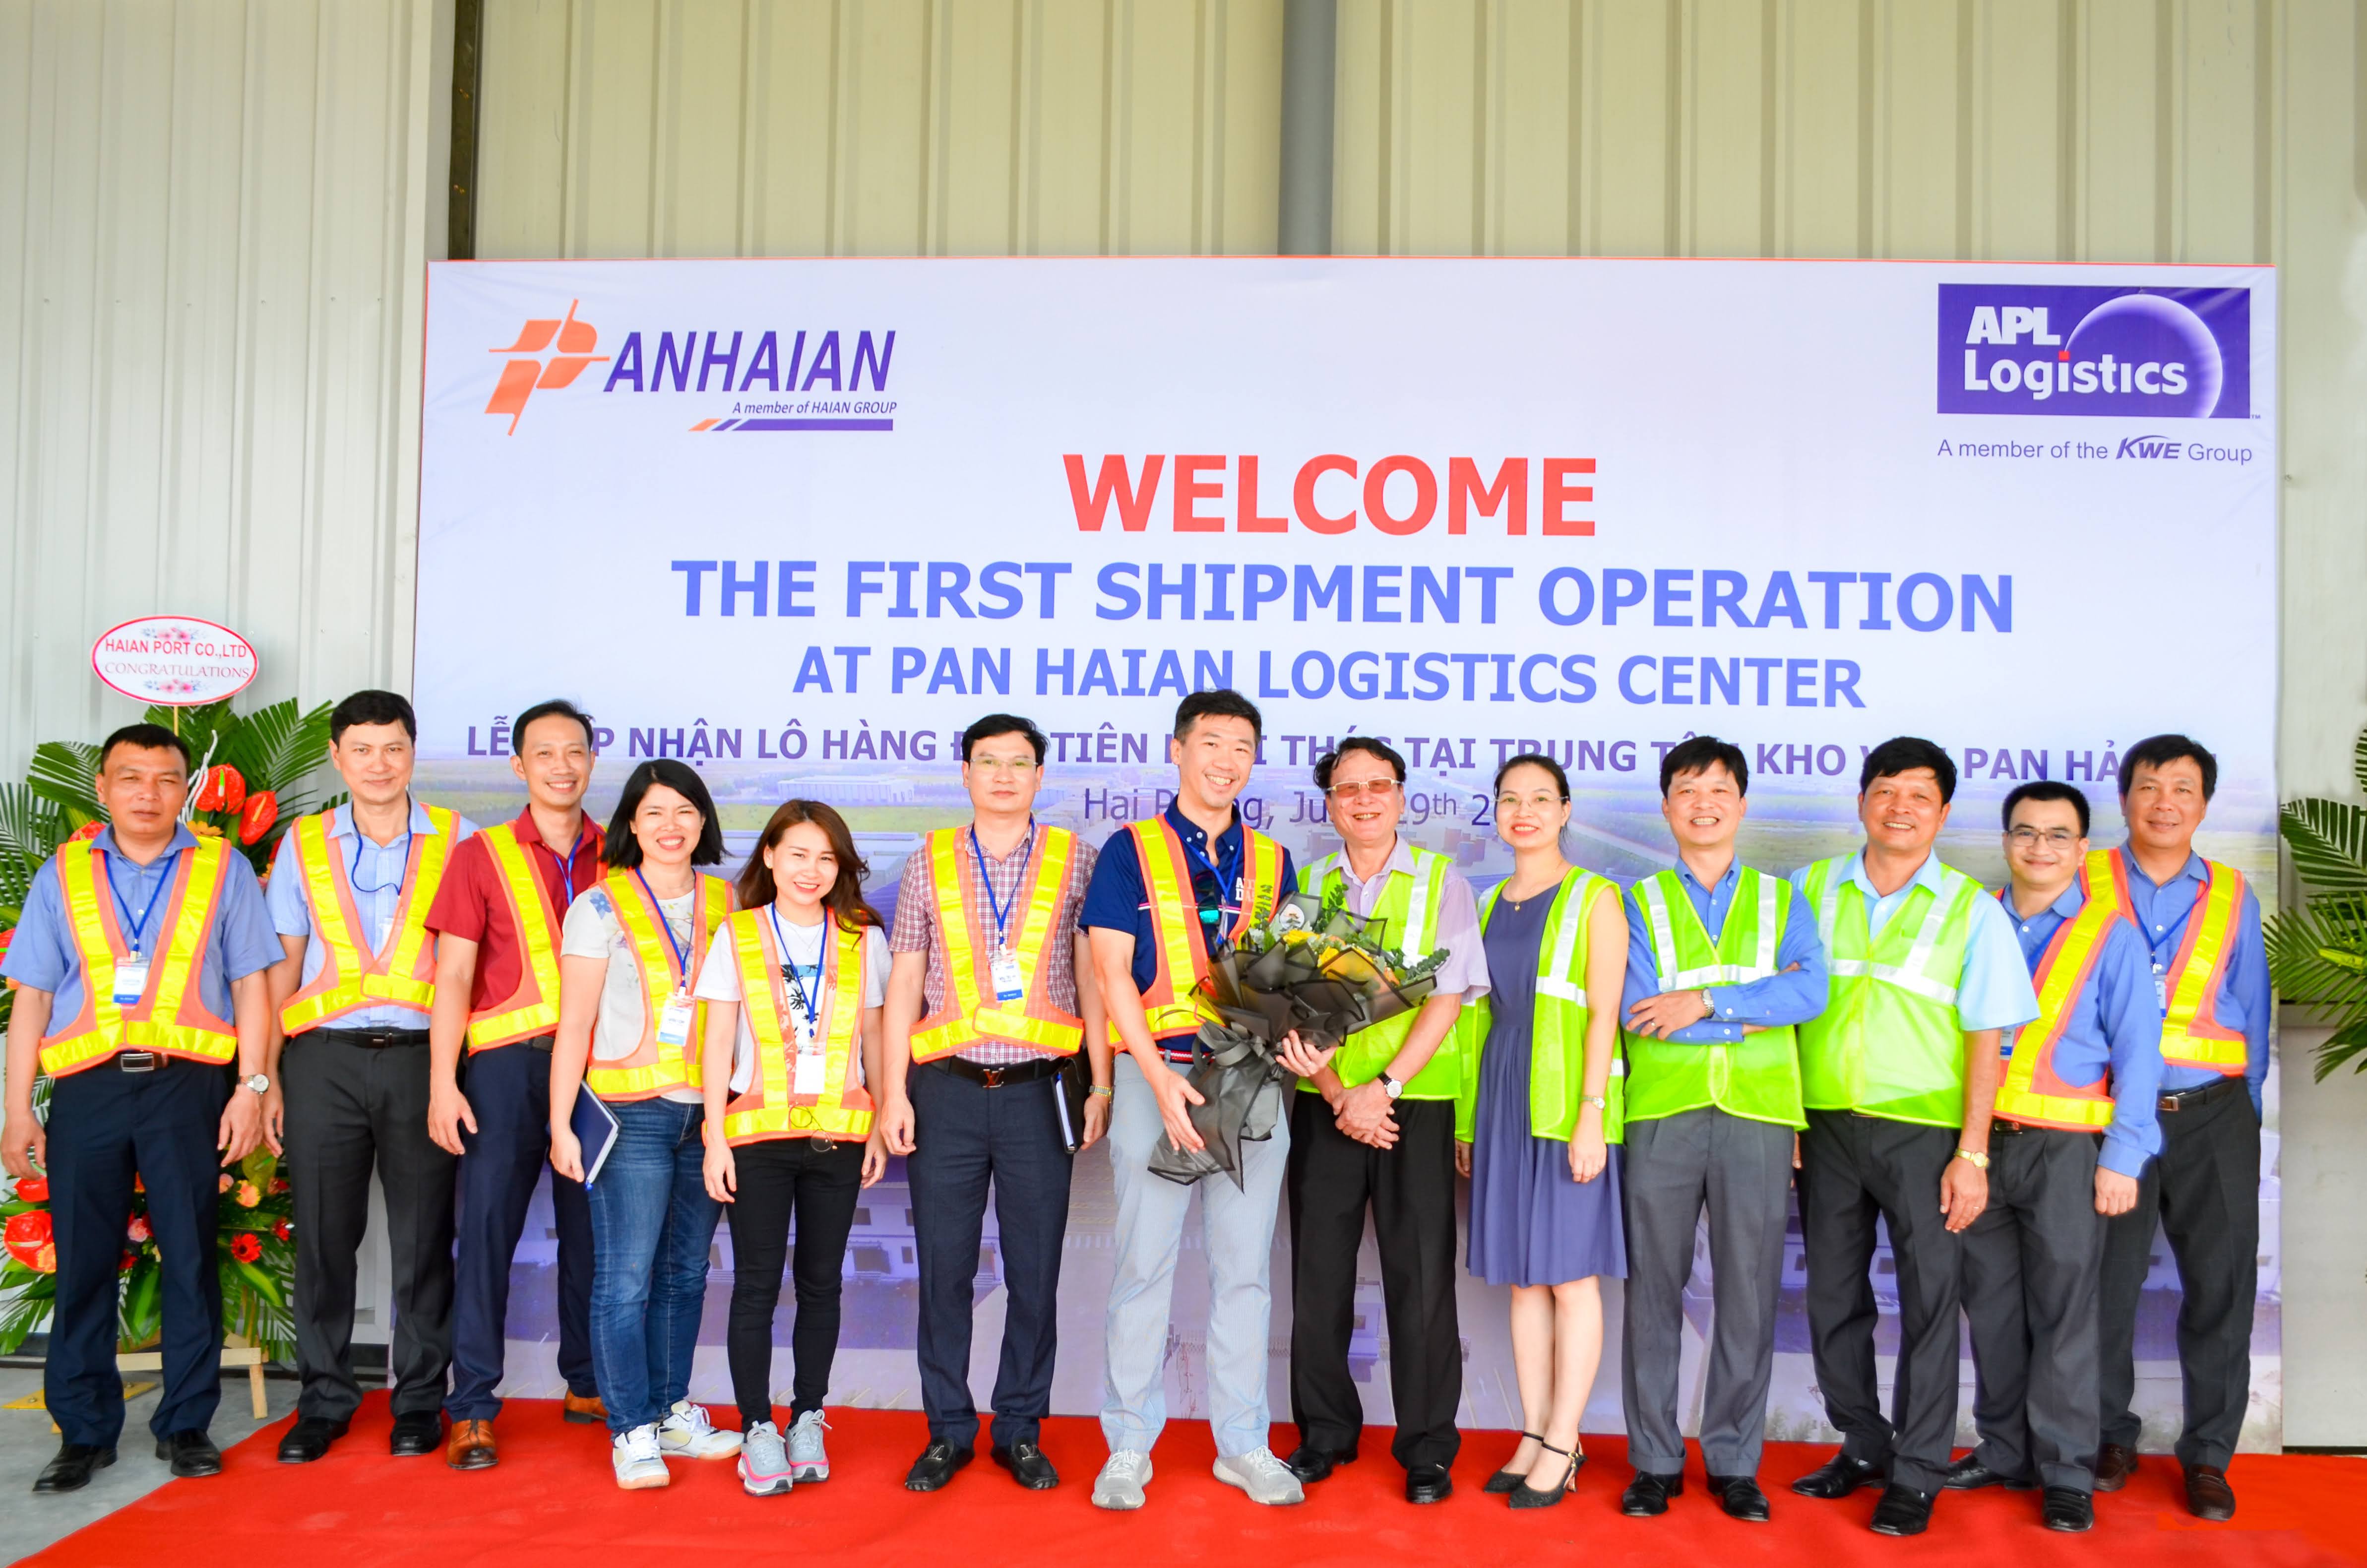 Trung tâm kho vận PAN HẢI AN khai thác lô hàng đầu tiên của APL Logistics